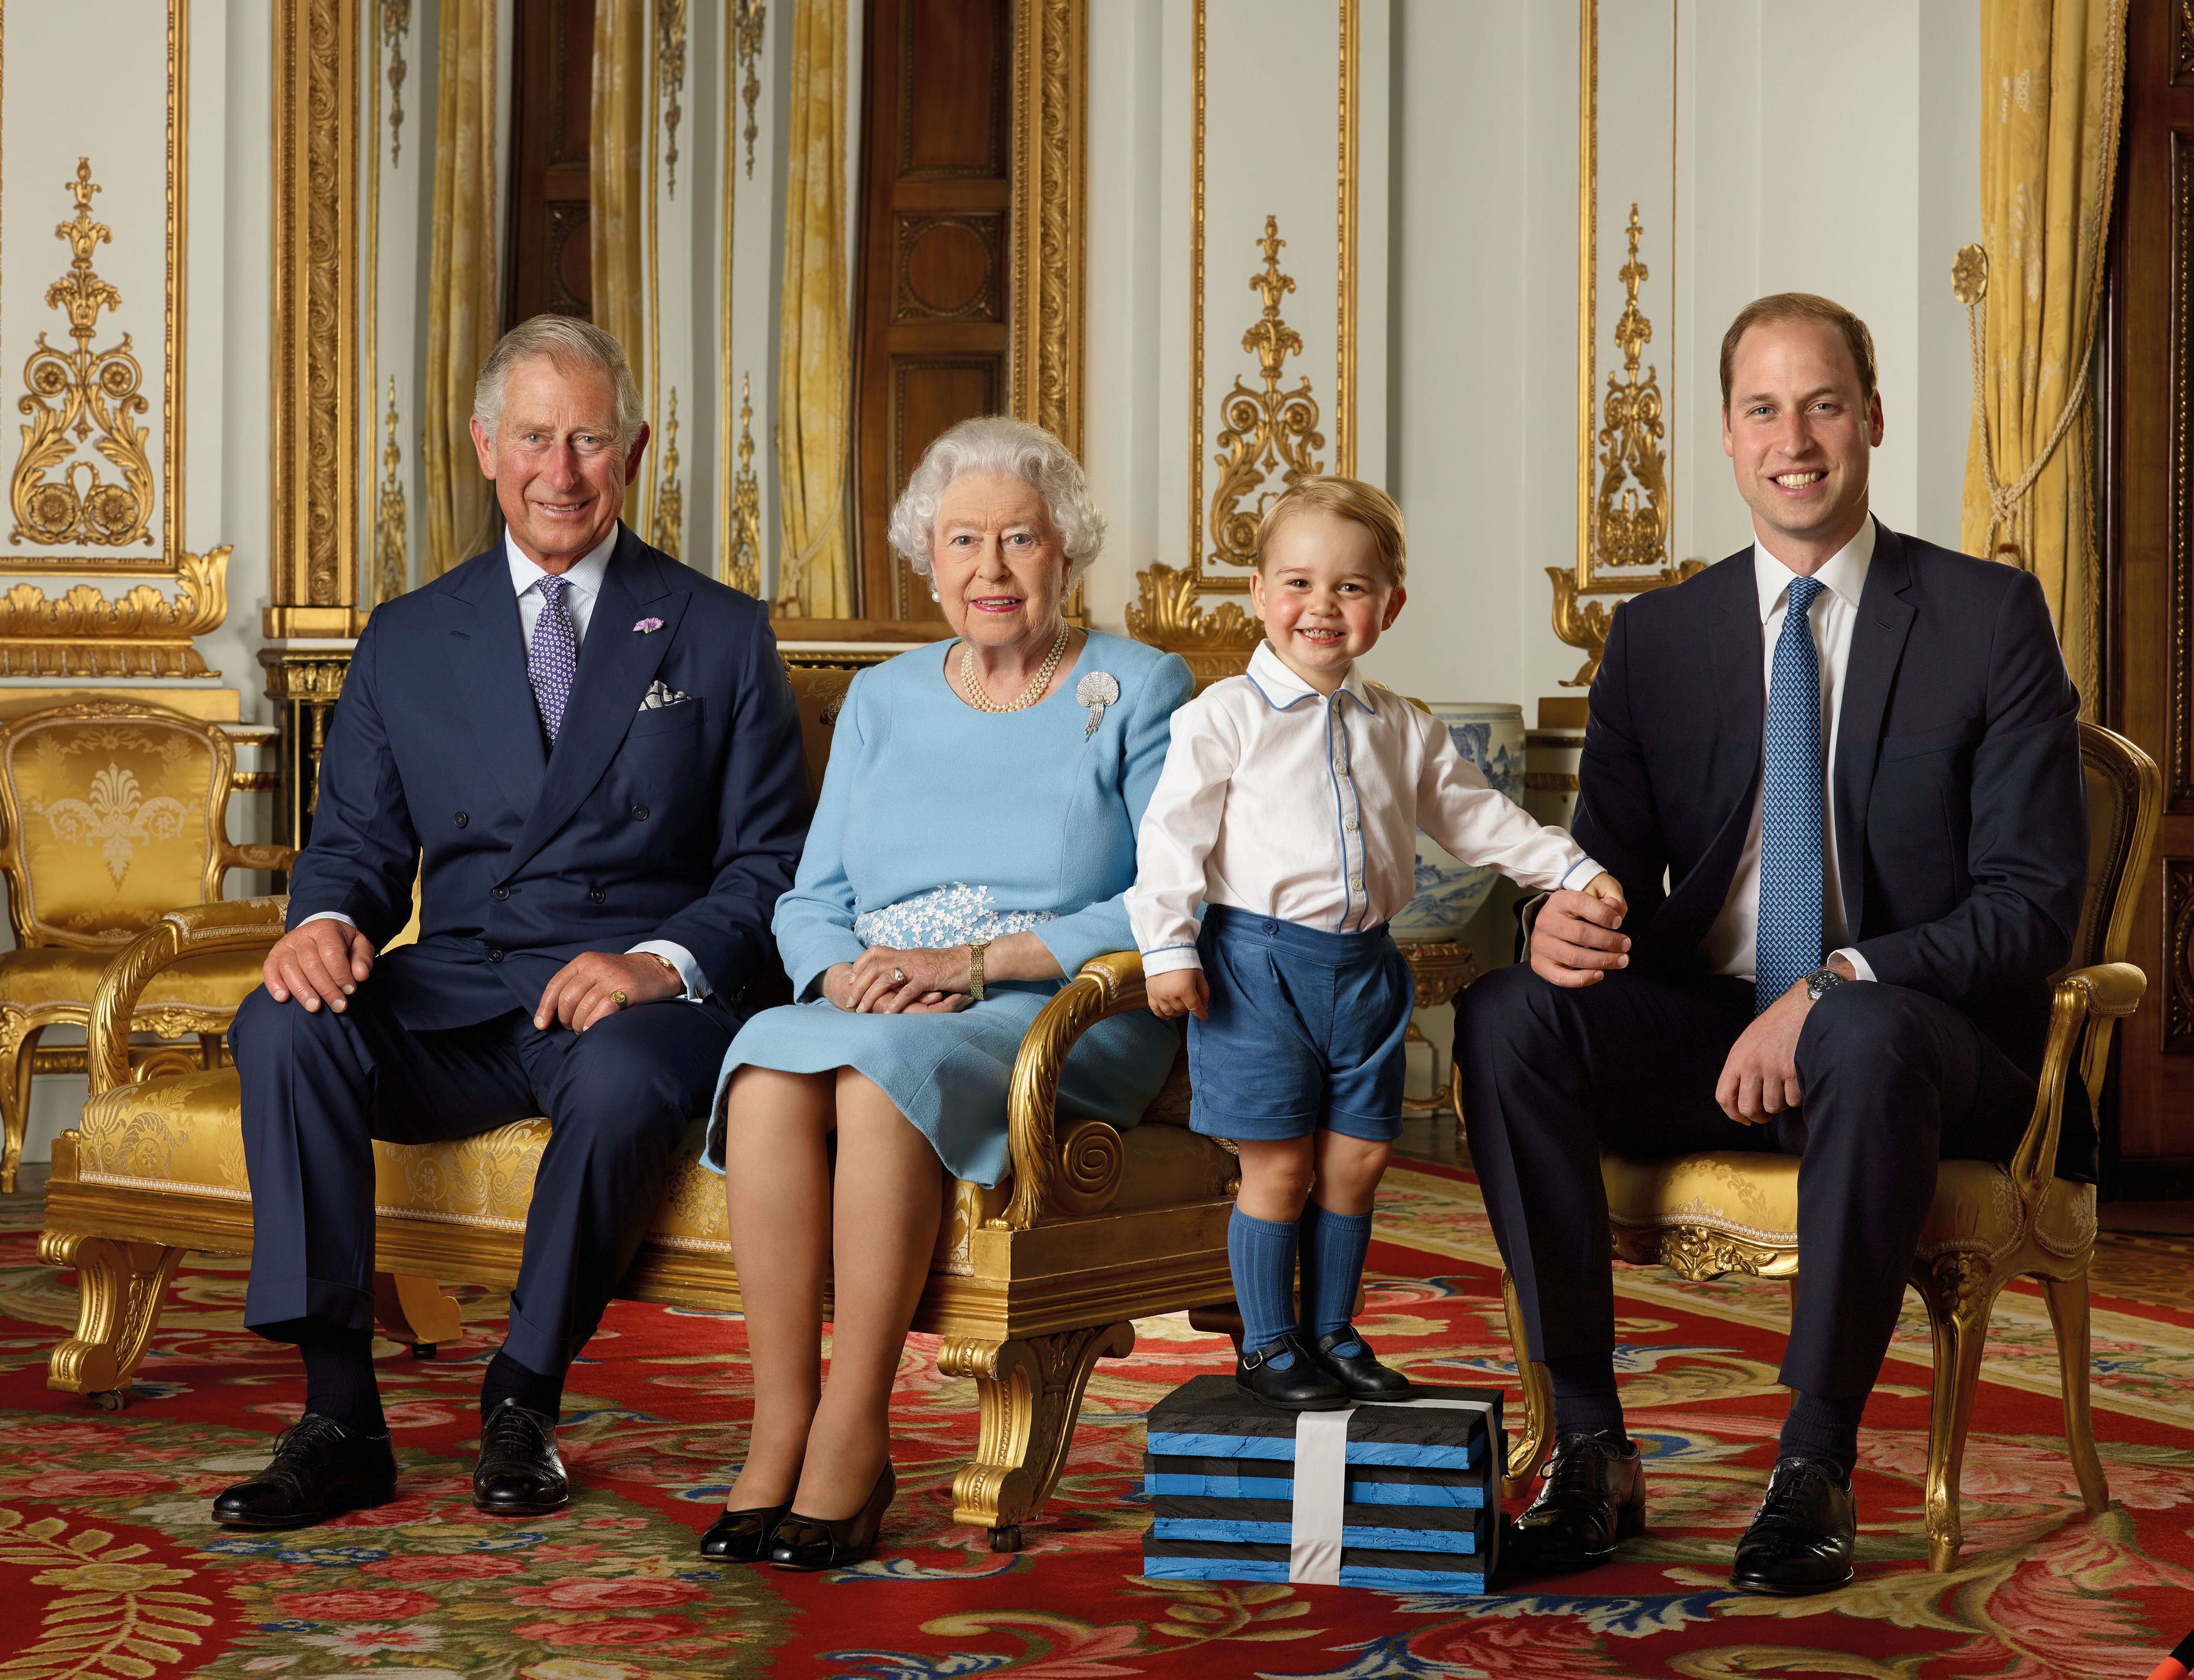 Dieses Porträt von George mit Charles, der Königin und William war ein Sonderauftrag der Post zum 90. Geburtstag der Königin